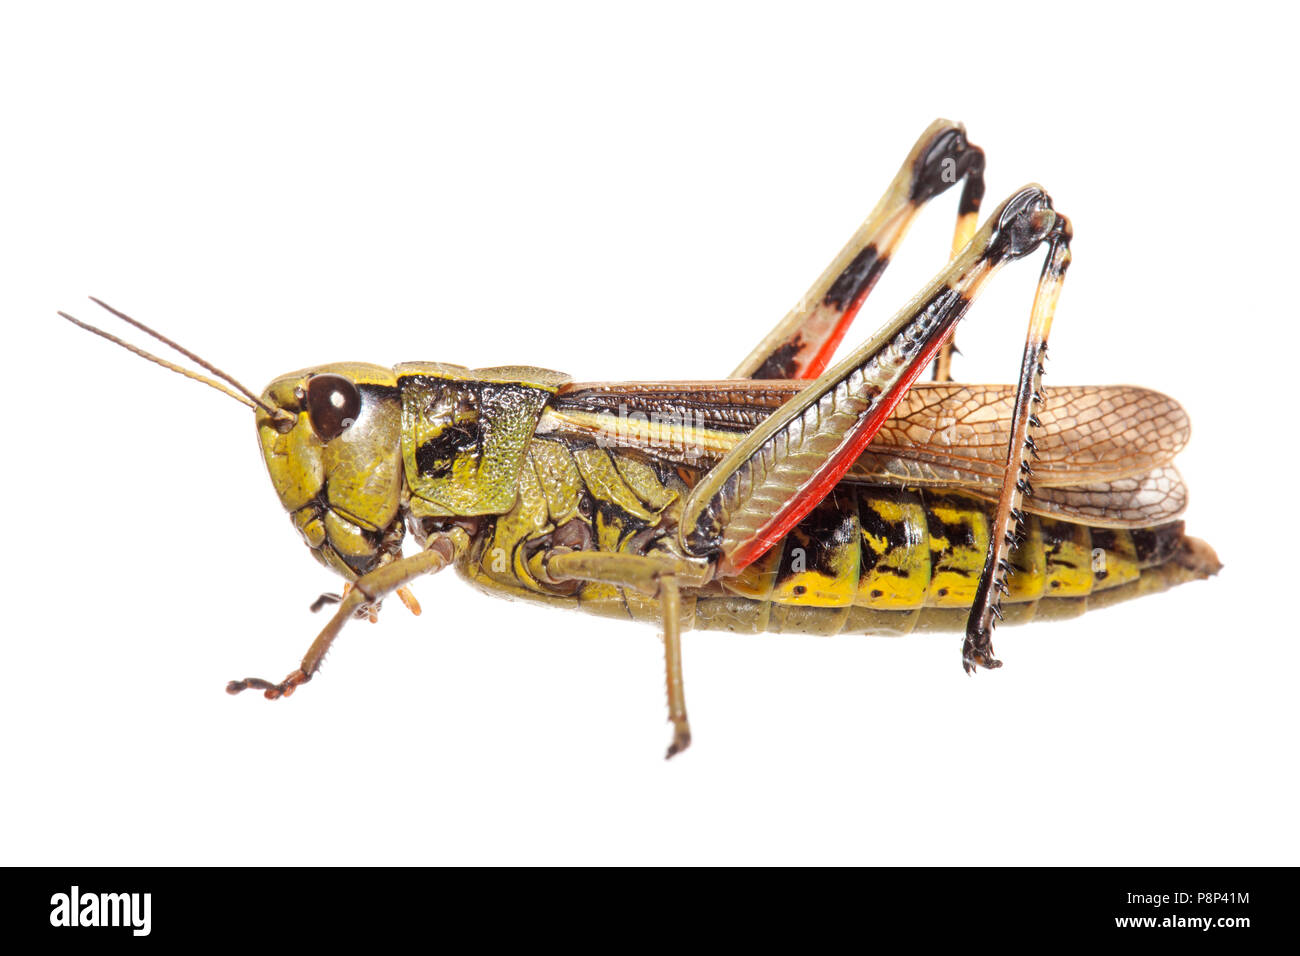 Gran pantano grasshopper aislado sobre un fondo blanco. Foto de stock